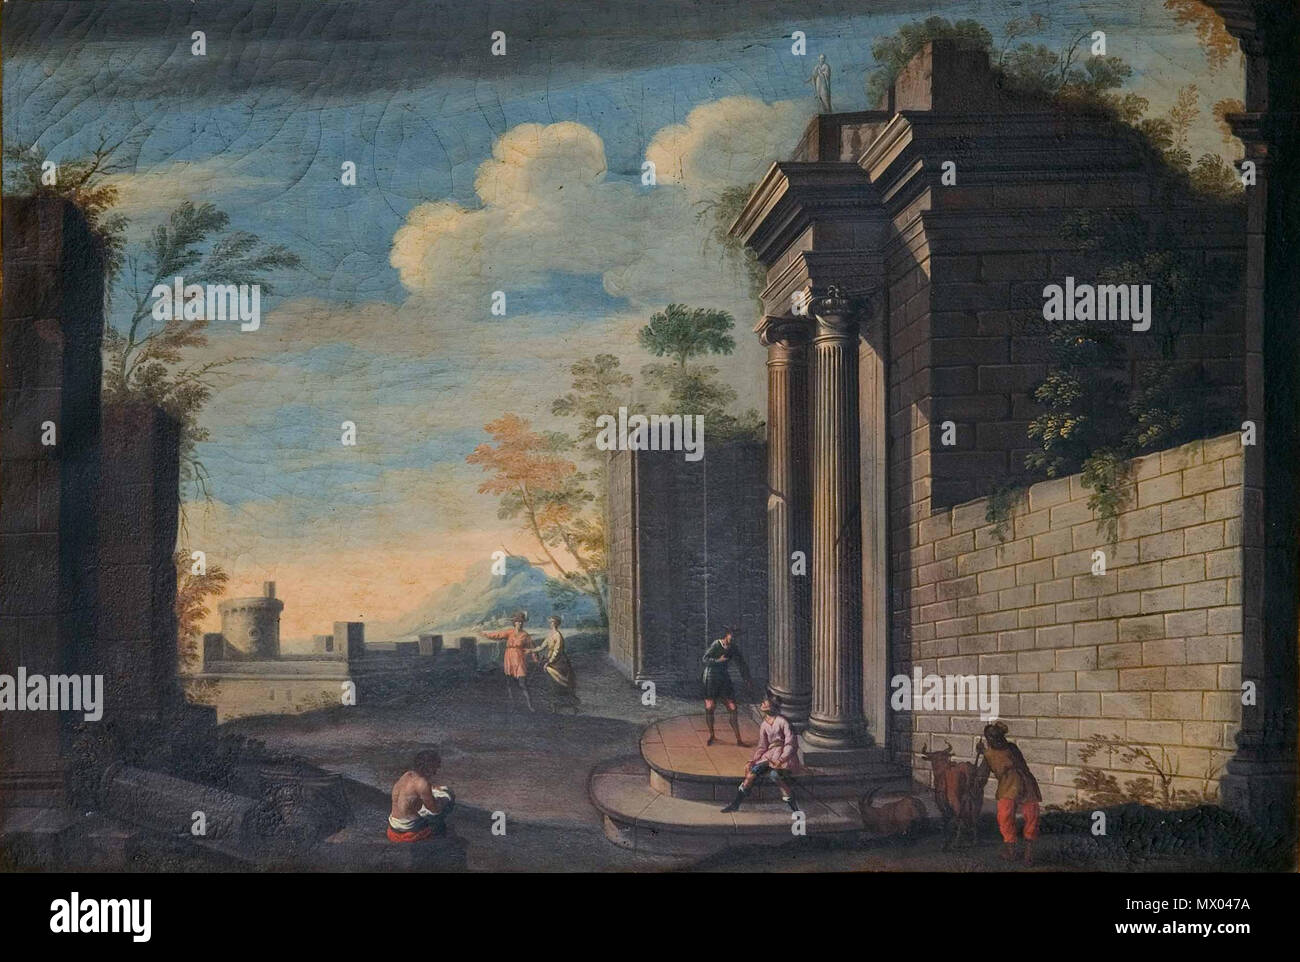 . Español: Arquitectura clásica, óleo sobre lienzo, 78 x 116 cm, colección particular. circa 1700. Pedro Onofre Cotto 145 Cotto-arquitectura Stock Photo